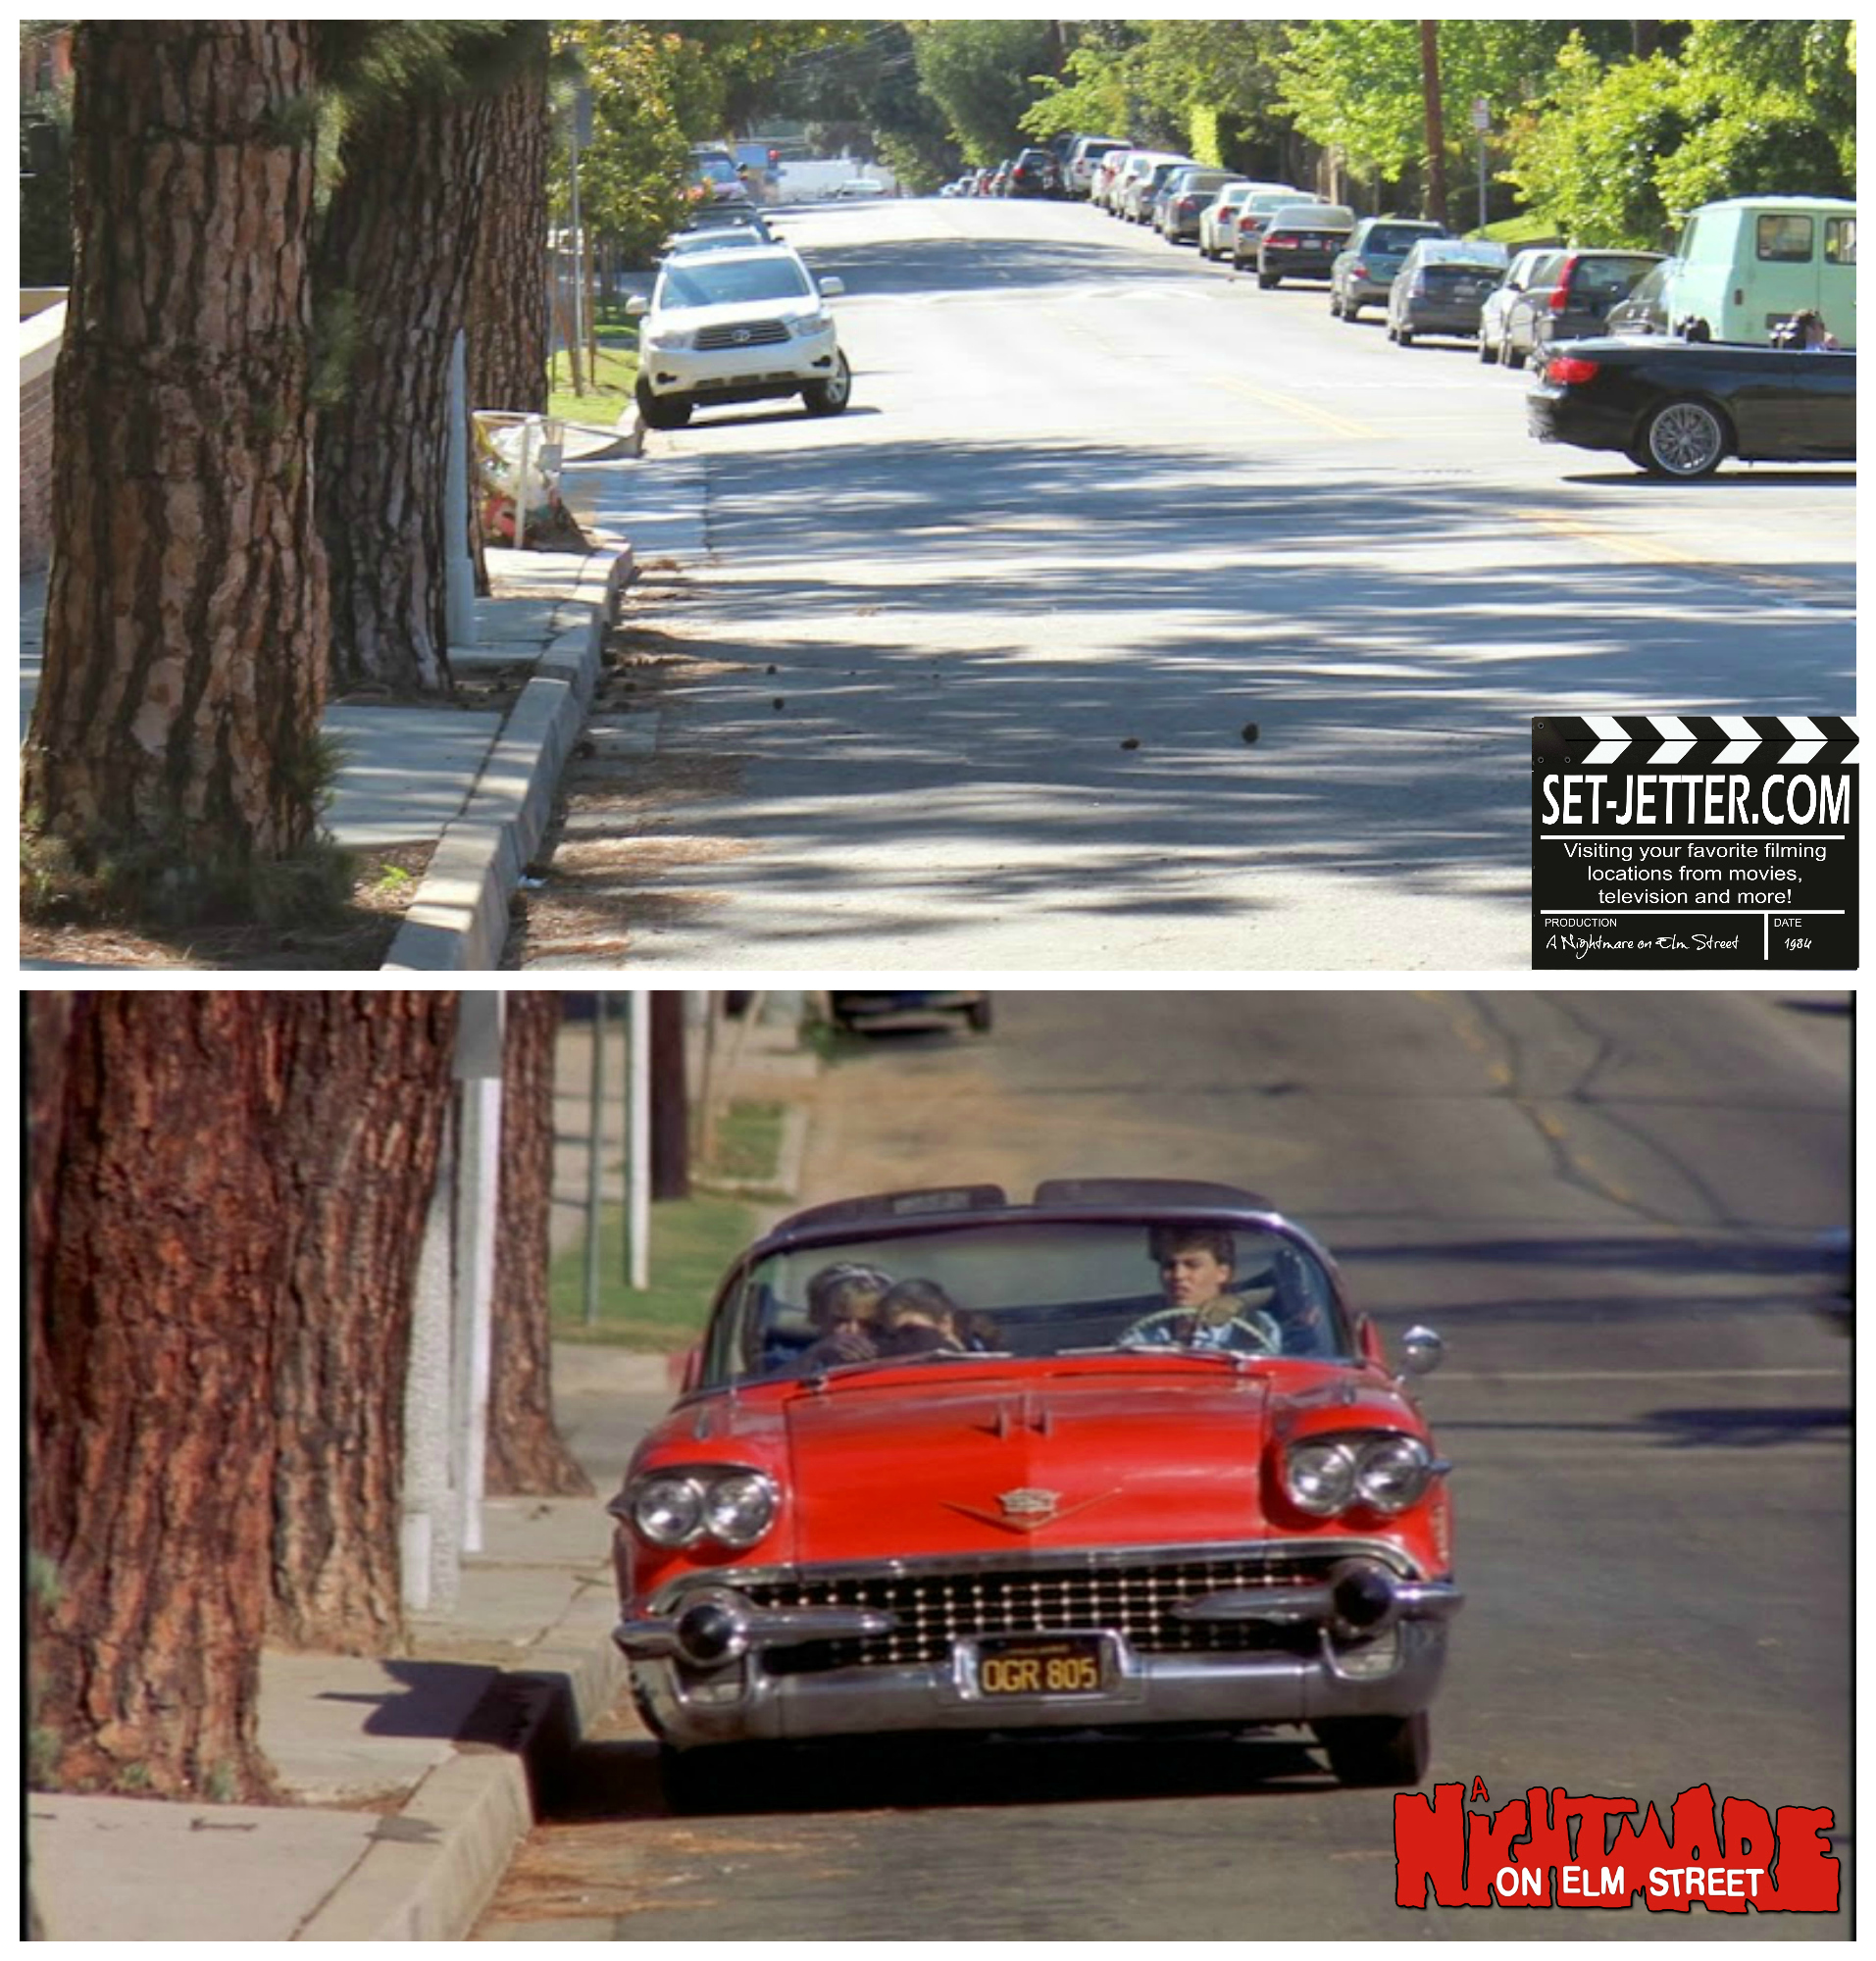 Nightmare on Elm Street comparison 02.jpg